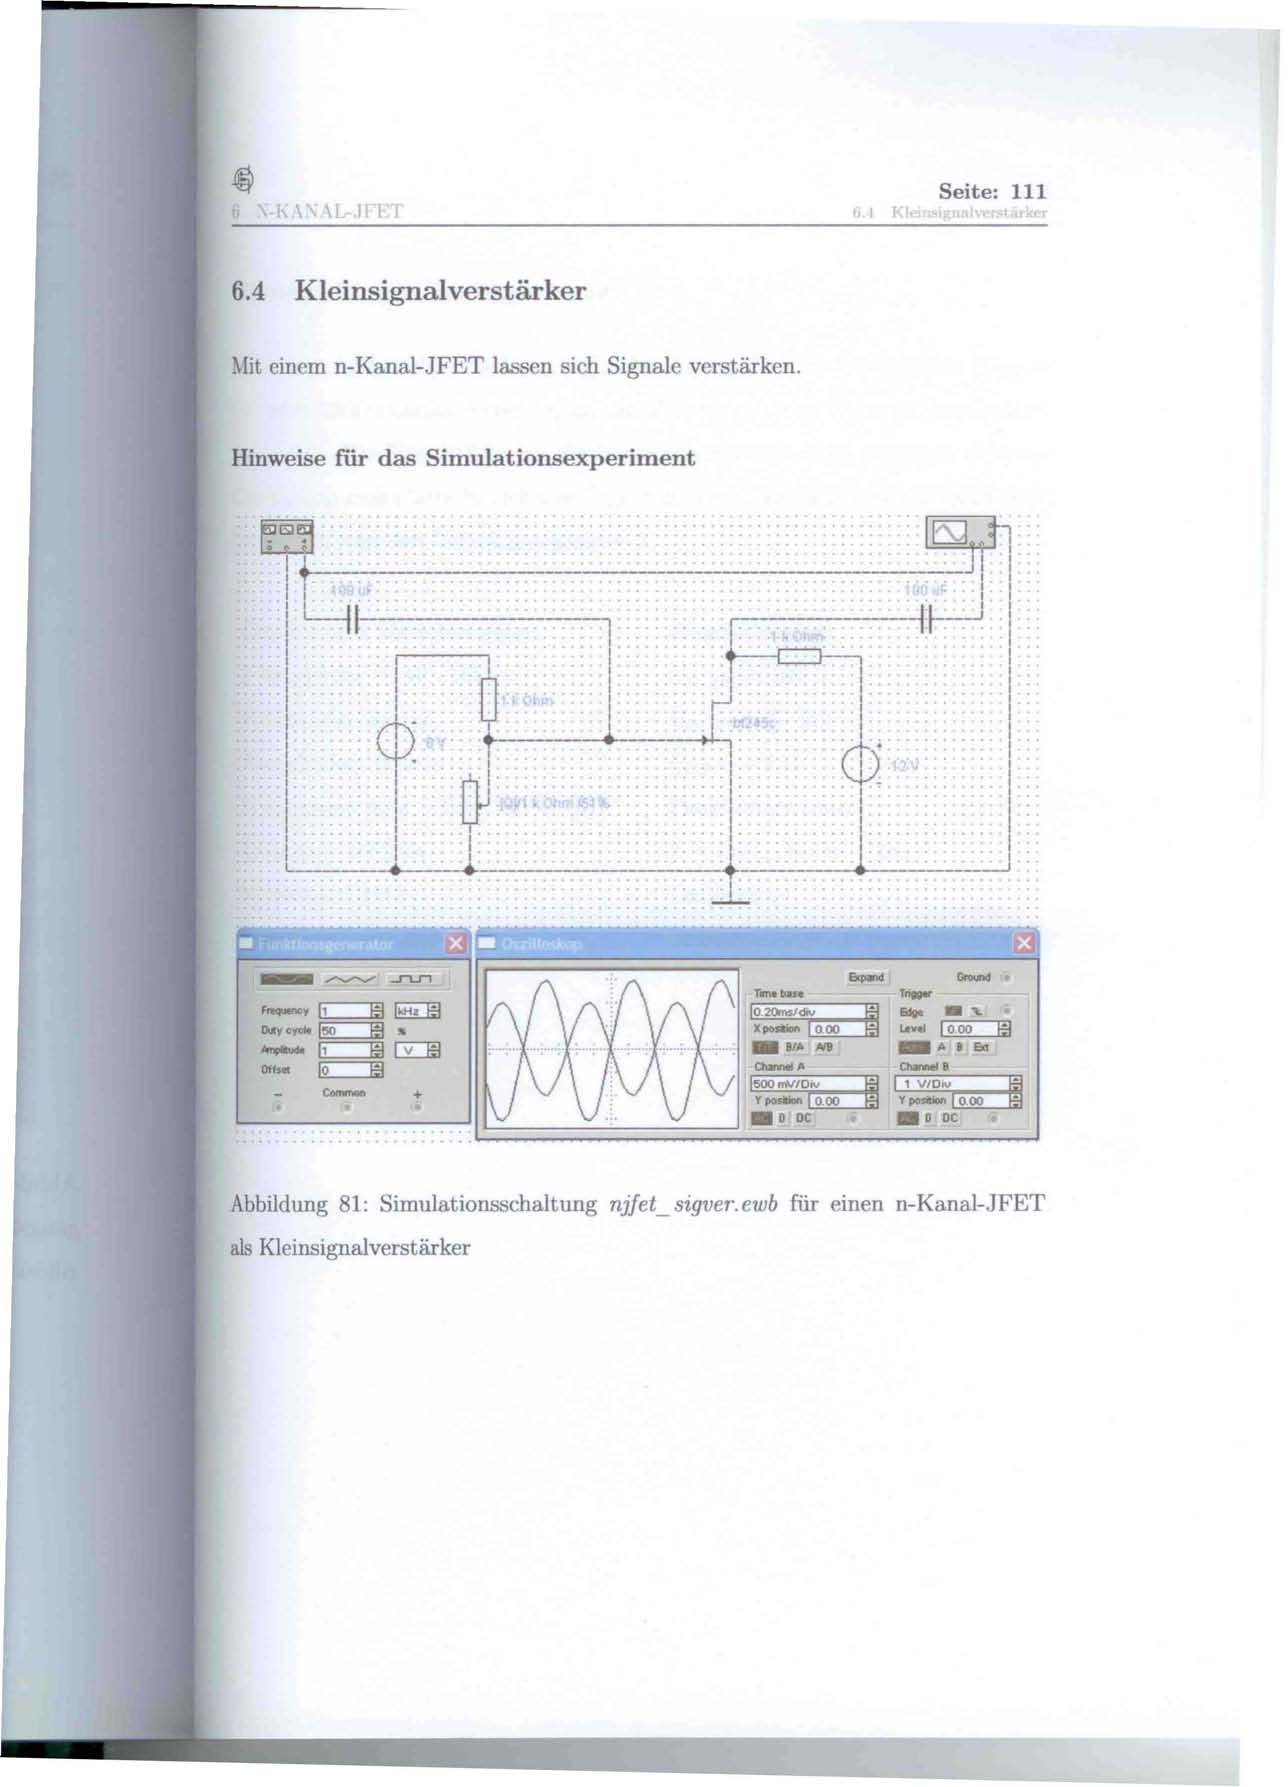 I KI Seite: 111 6.4 Kleinsignalverstärker. fit einem n-kanal-jfet lassen sich Signale verstärken. Hinweise für das Simulationsexperiment...~... ~~f :: ::::: T::' </::::::::-: J. :.:/-~:F\l: YI. -:1~.